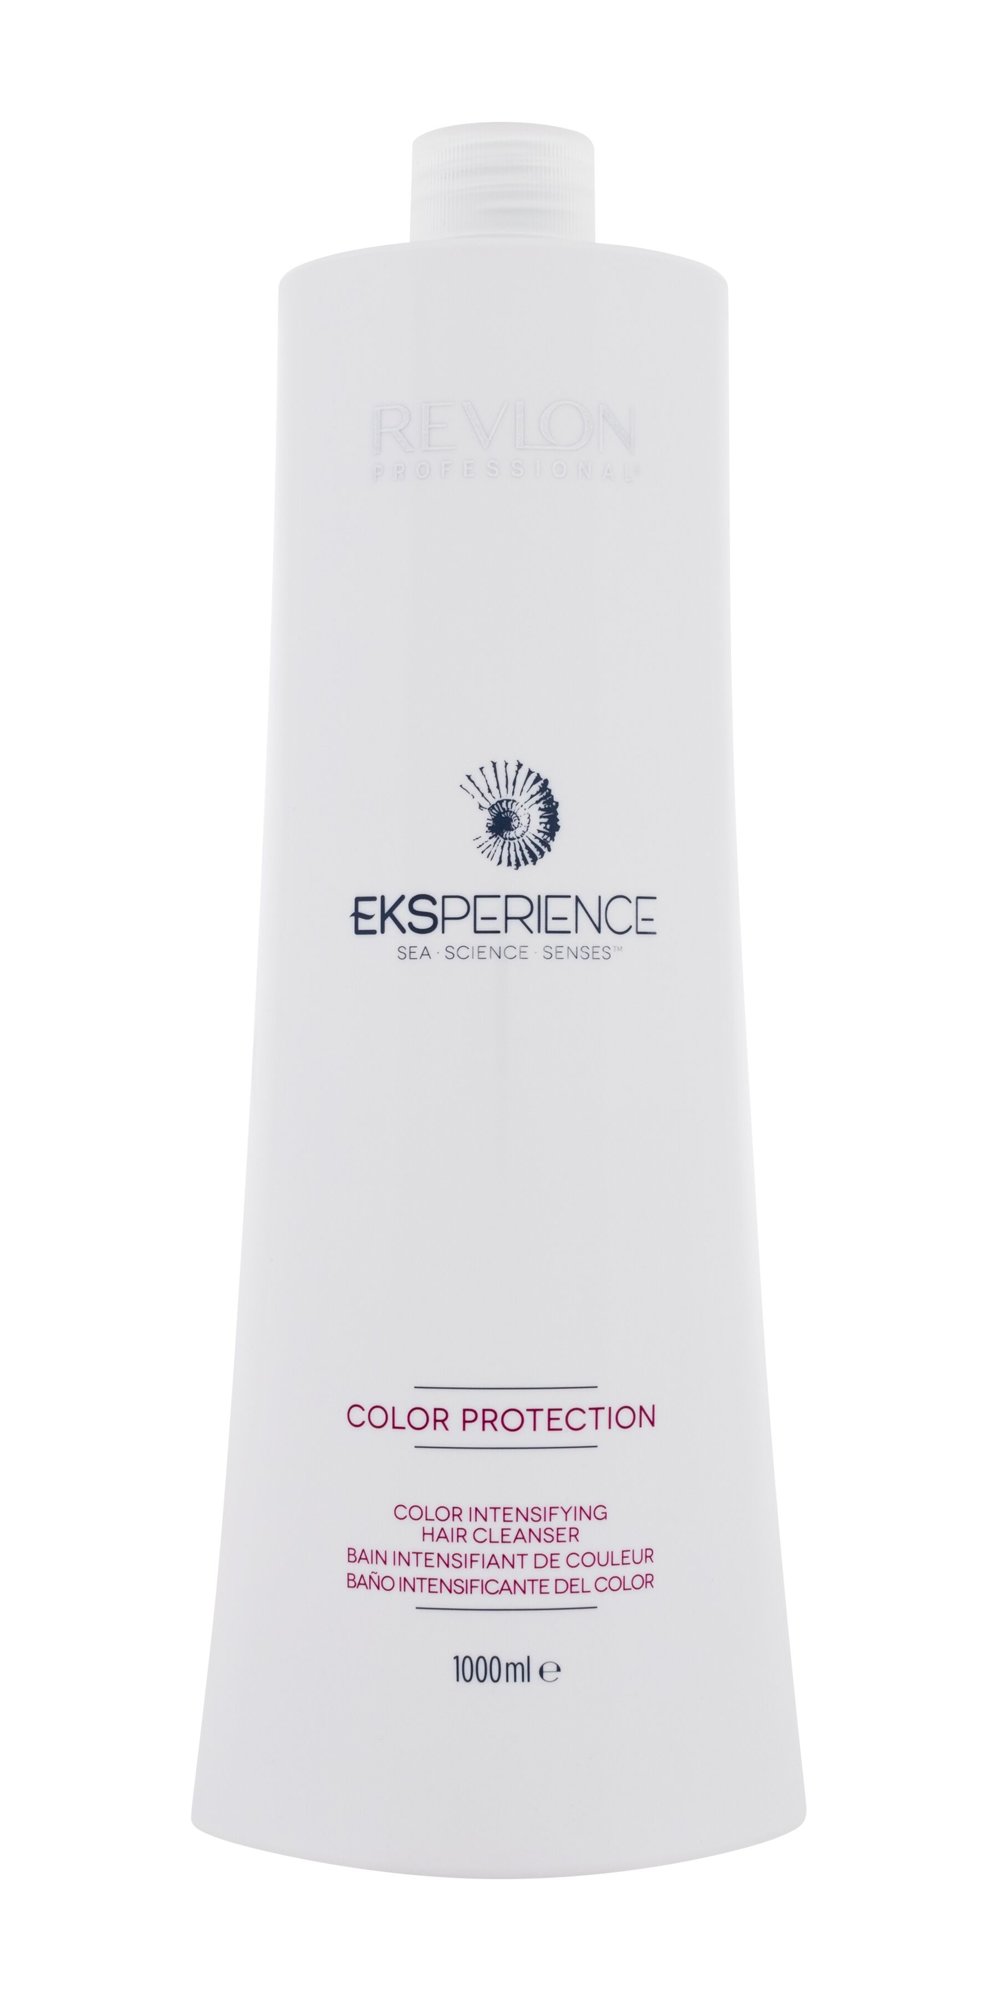 Revlon Professional Eksperience Color Protection Color Intensifying Cleanser šampūnas